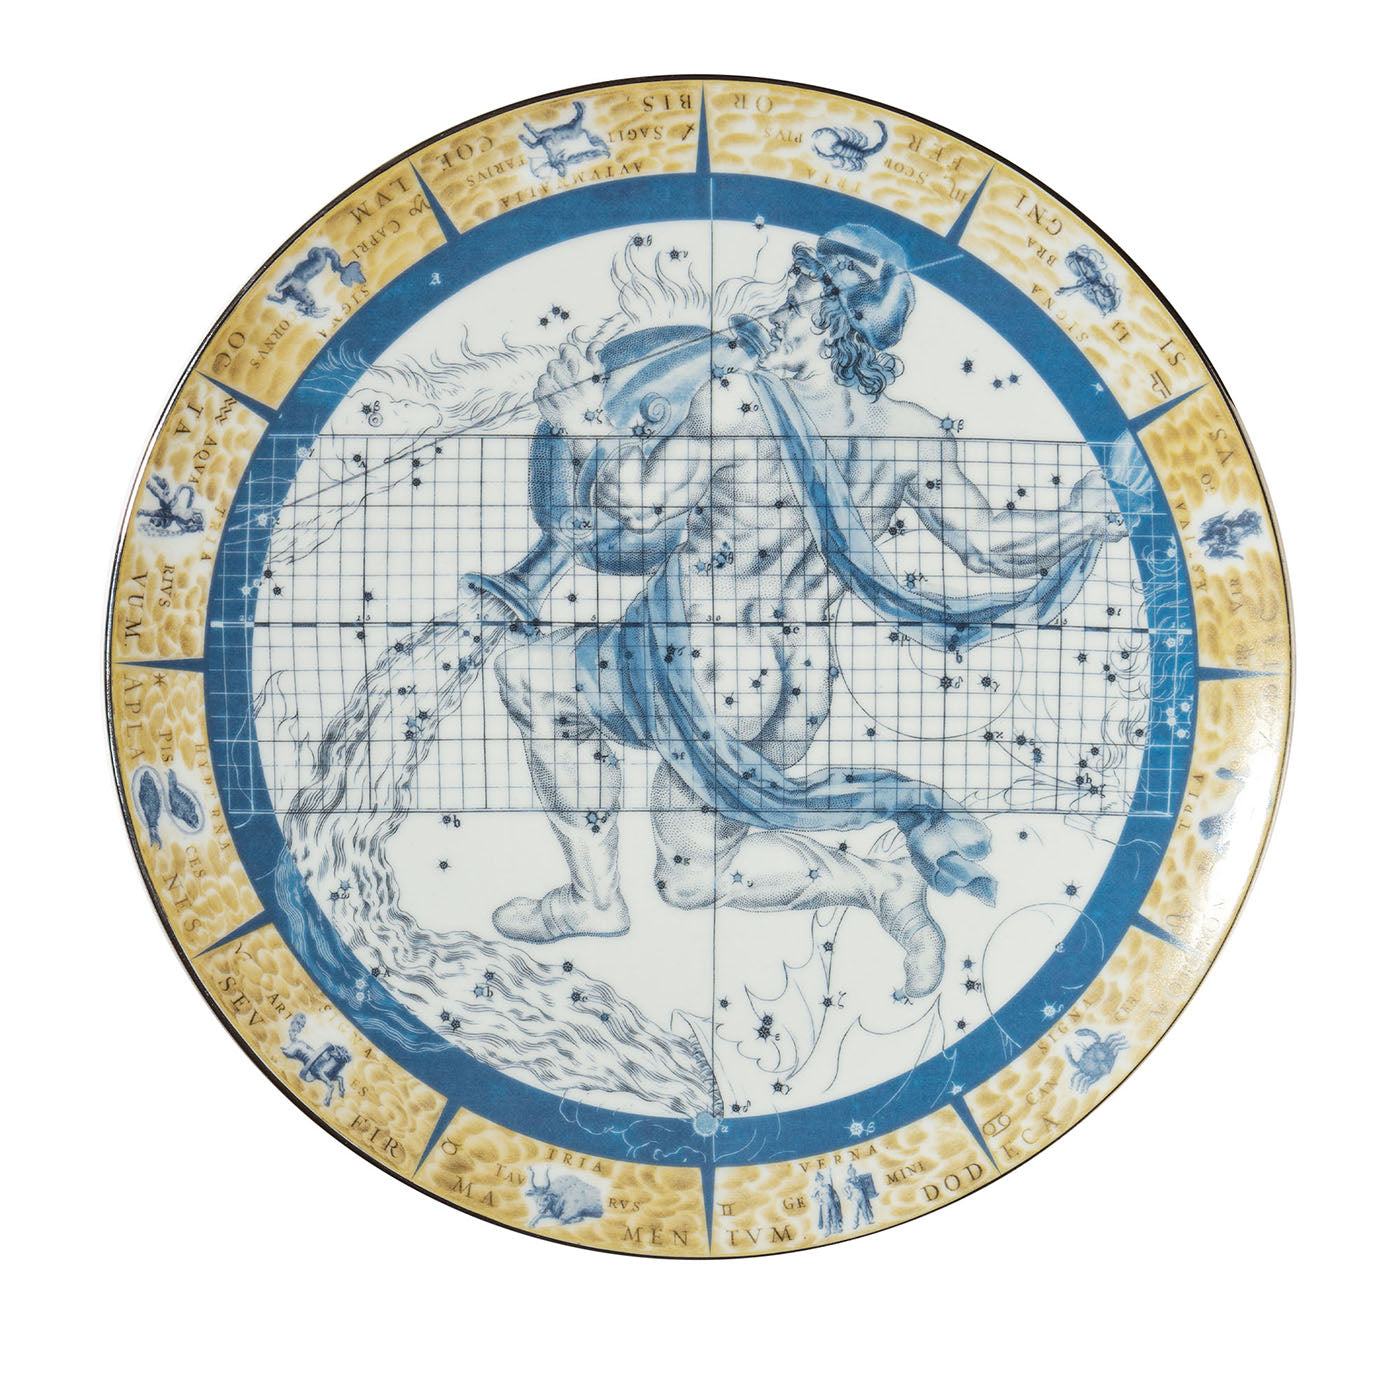 Zodiacus Aquarius decorative porcelain plate - Main view